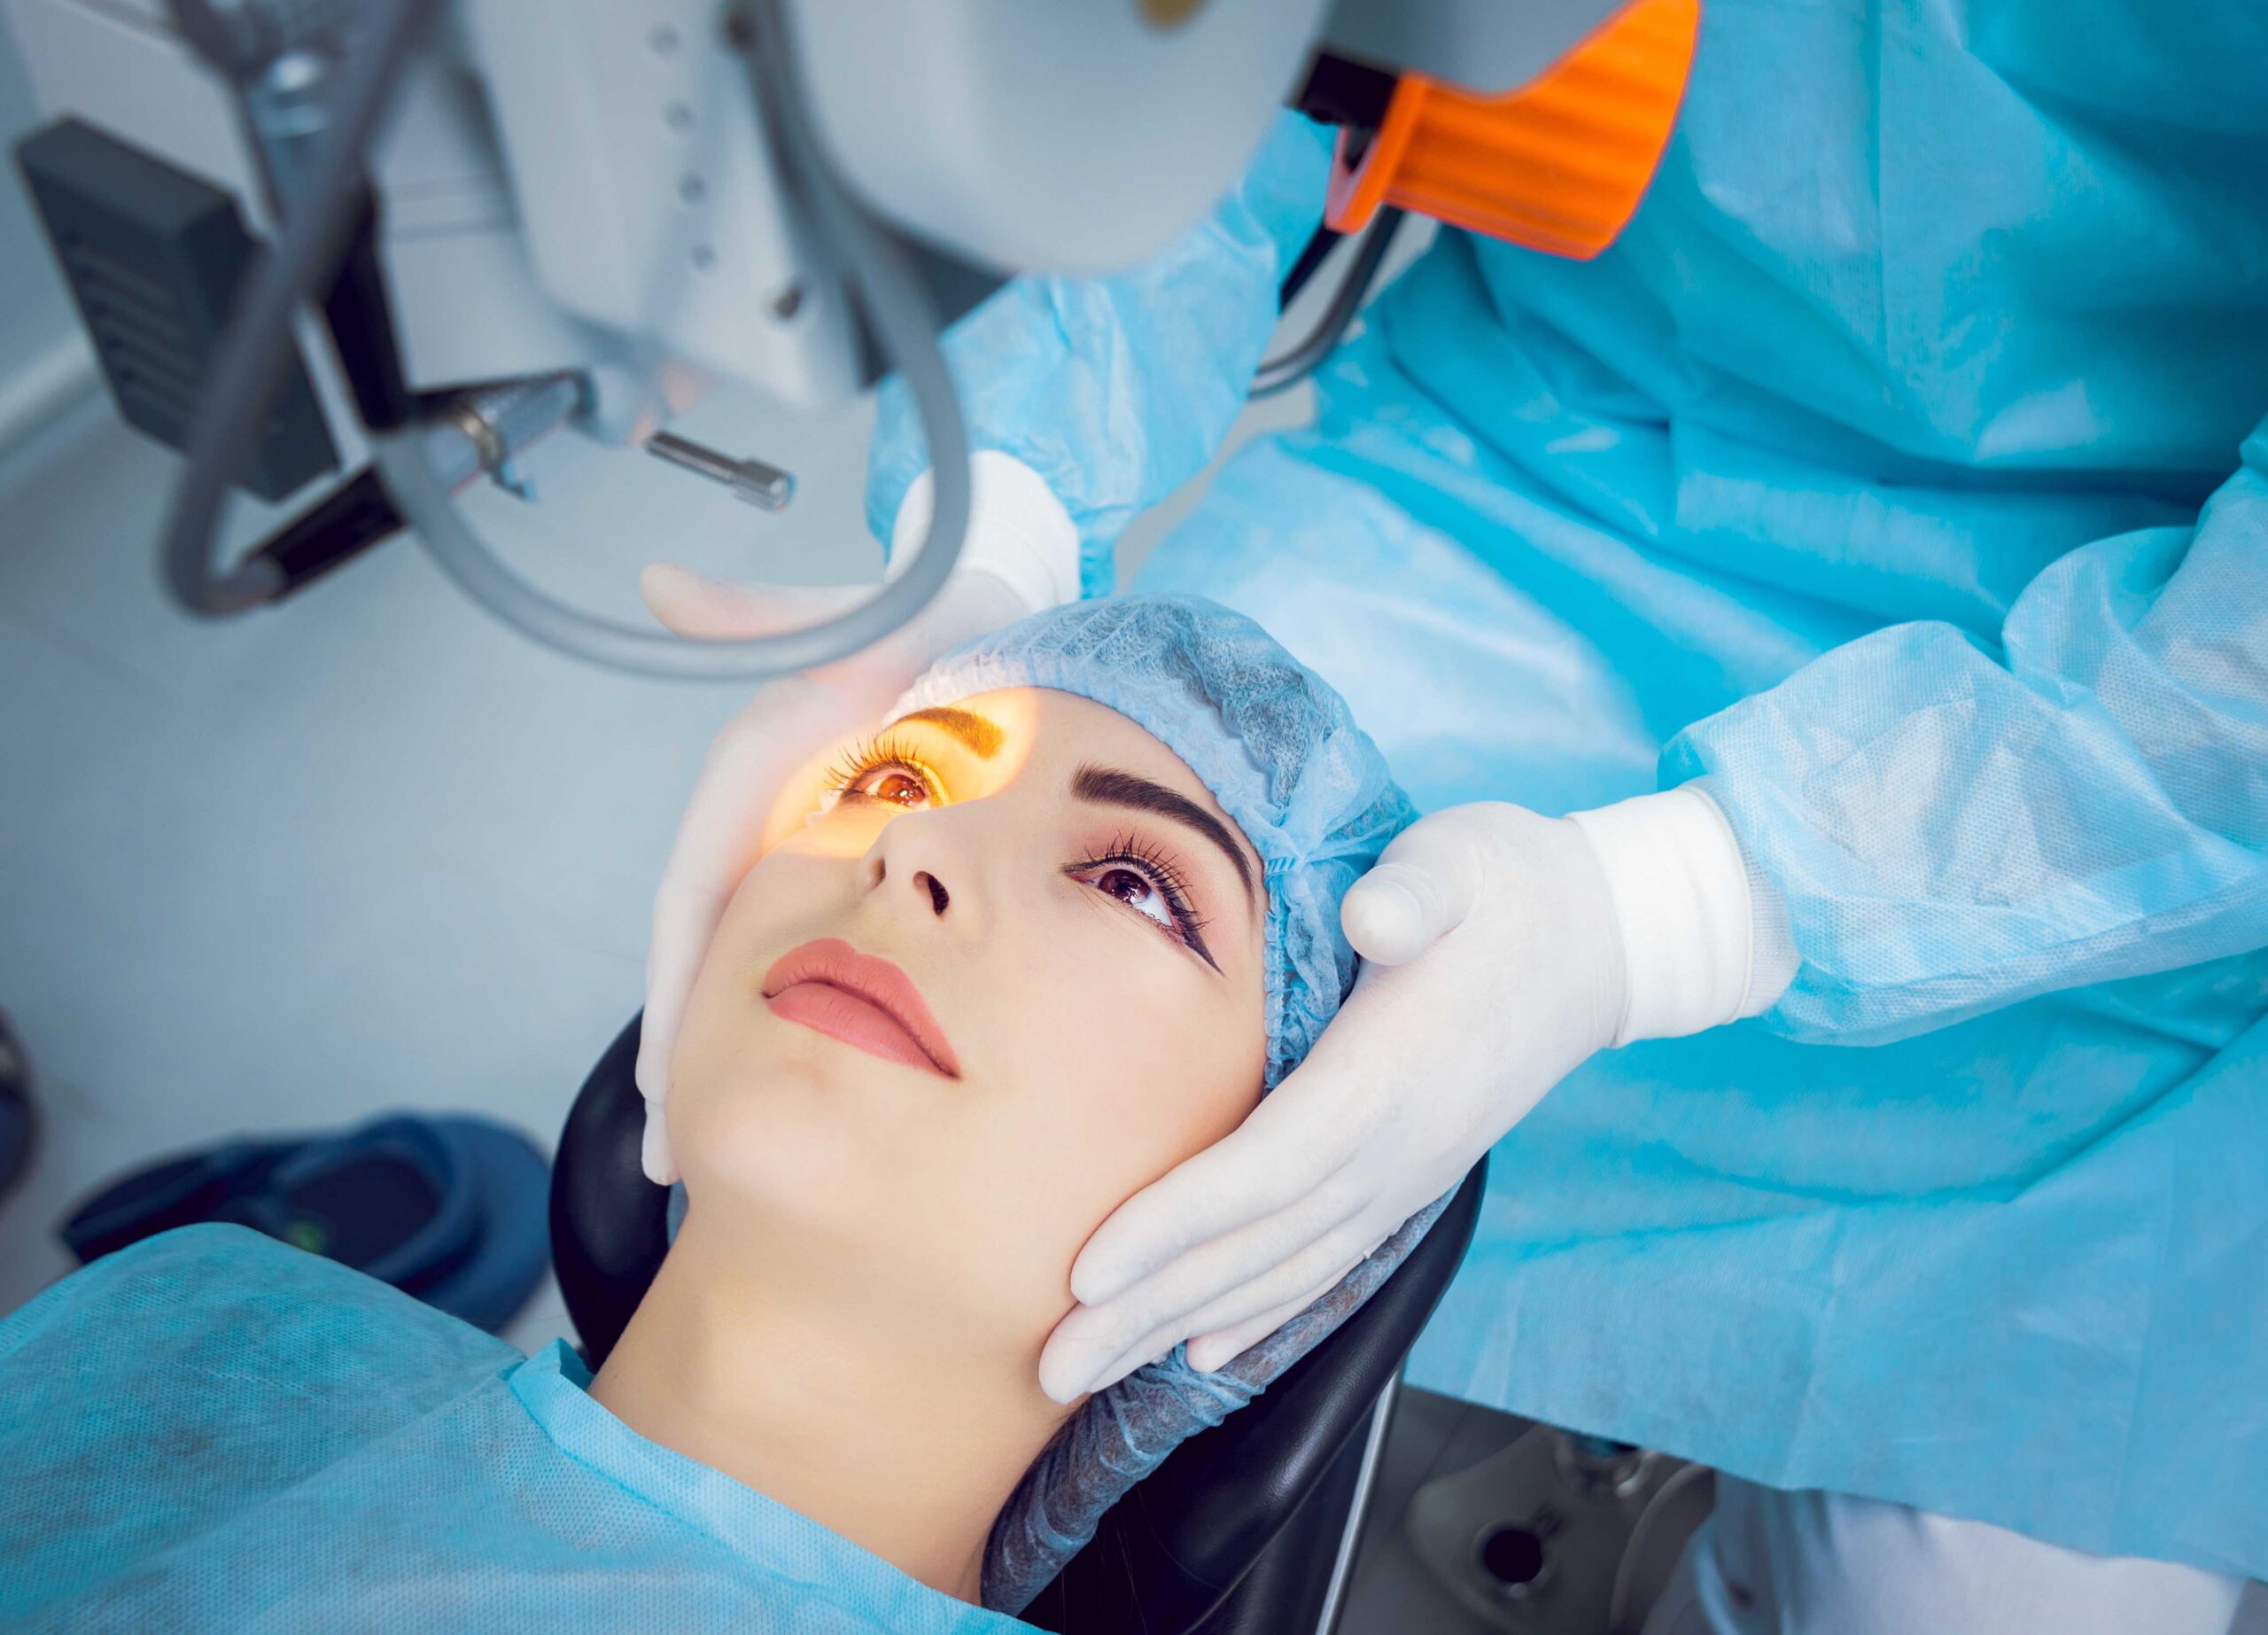 Лазерная коррекция зрения плюсы и минусы мнение. Лазерная хирургия глаза. Лазерная операция на зрение. Лазерная коррекция глаз. Лазер в пластической хирургии.